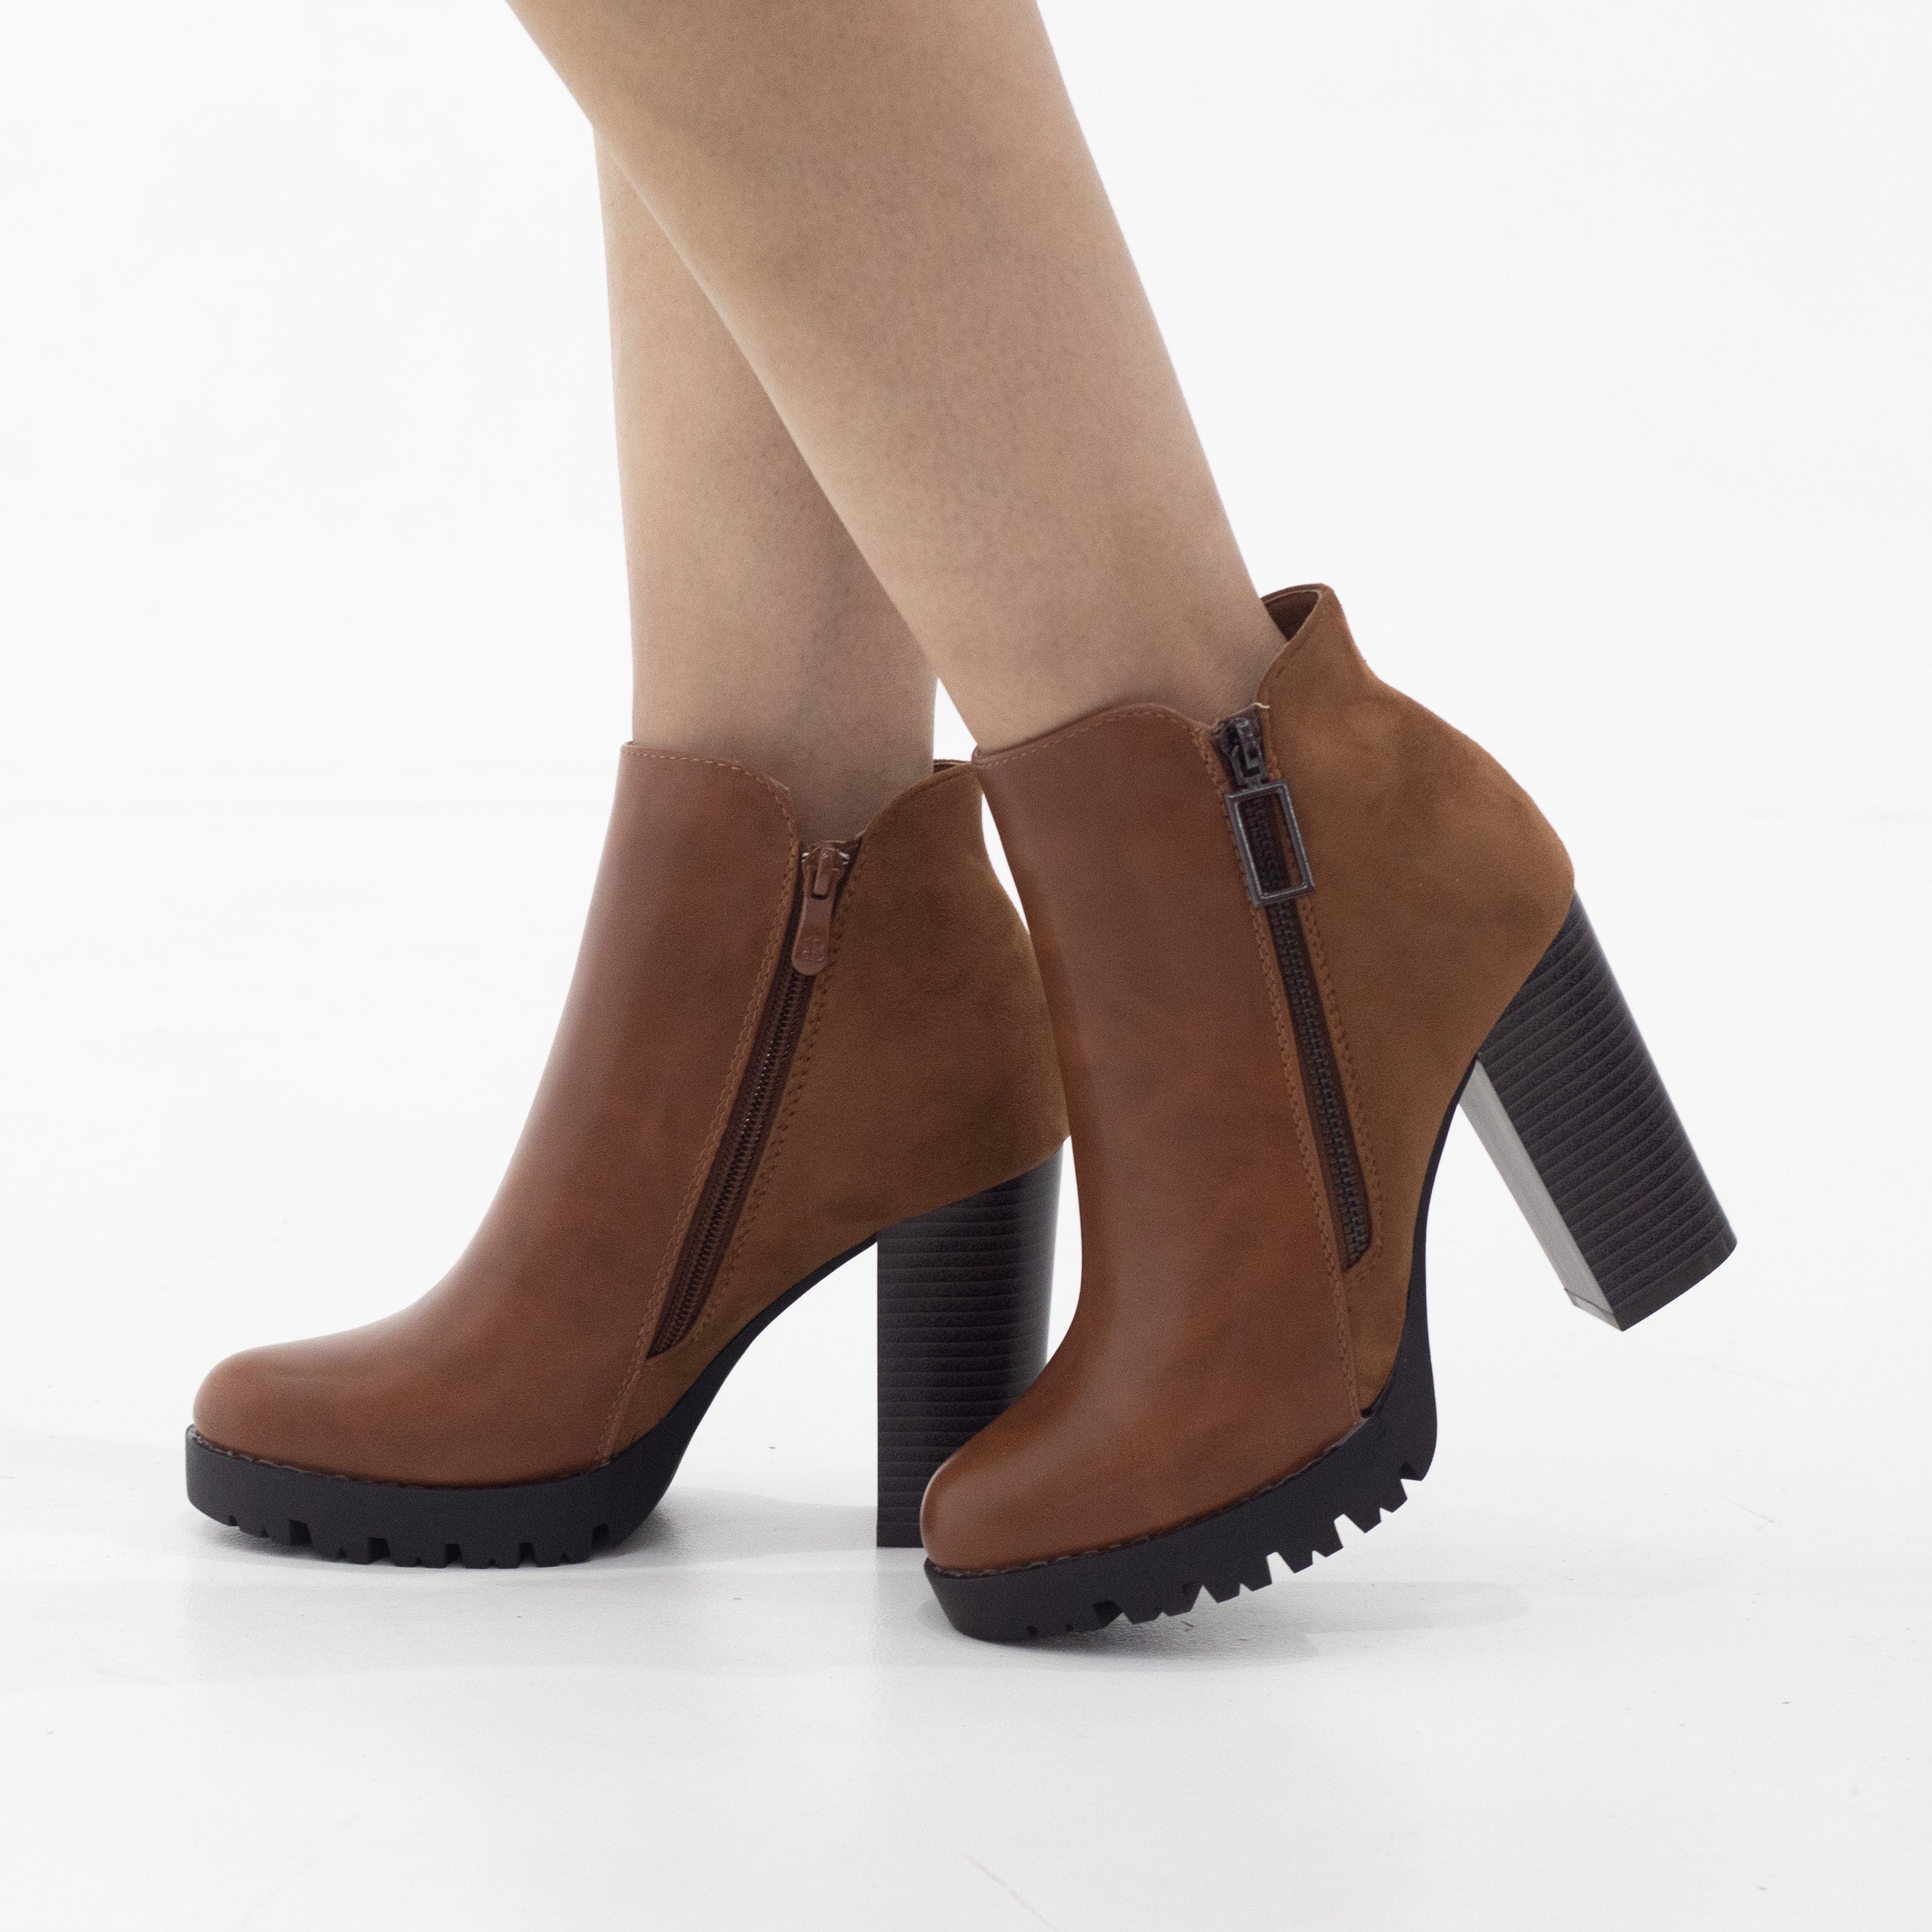 Tan 10cm heel side zip ankle boot uplift